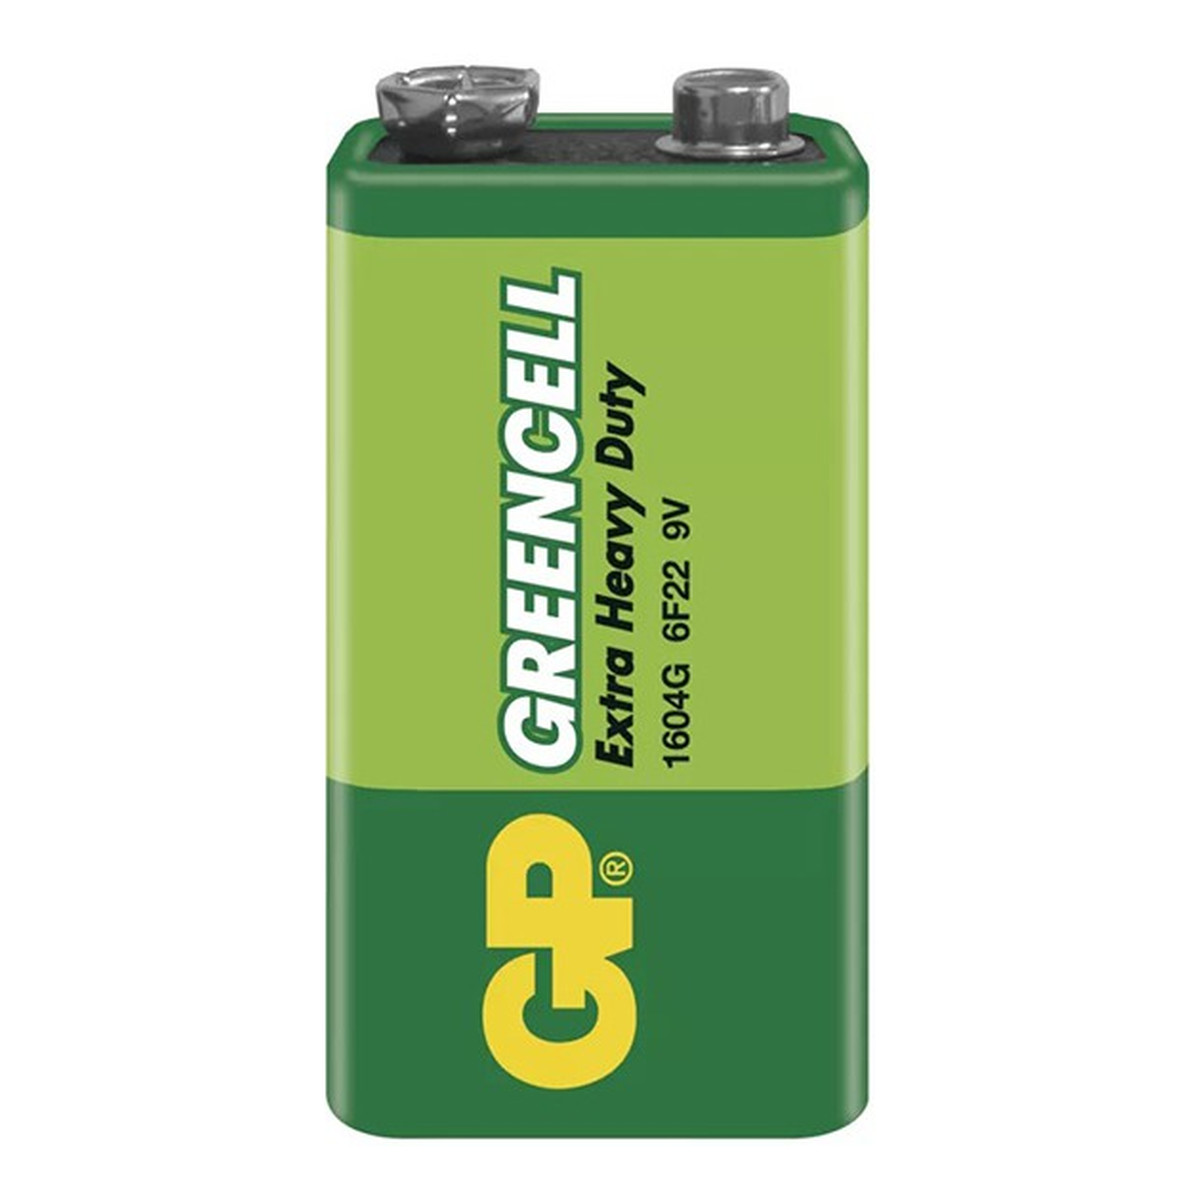 GP Battery Greencell Bateria cynkowo - chlorkowa 6F22 9V (1) 1604g